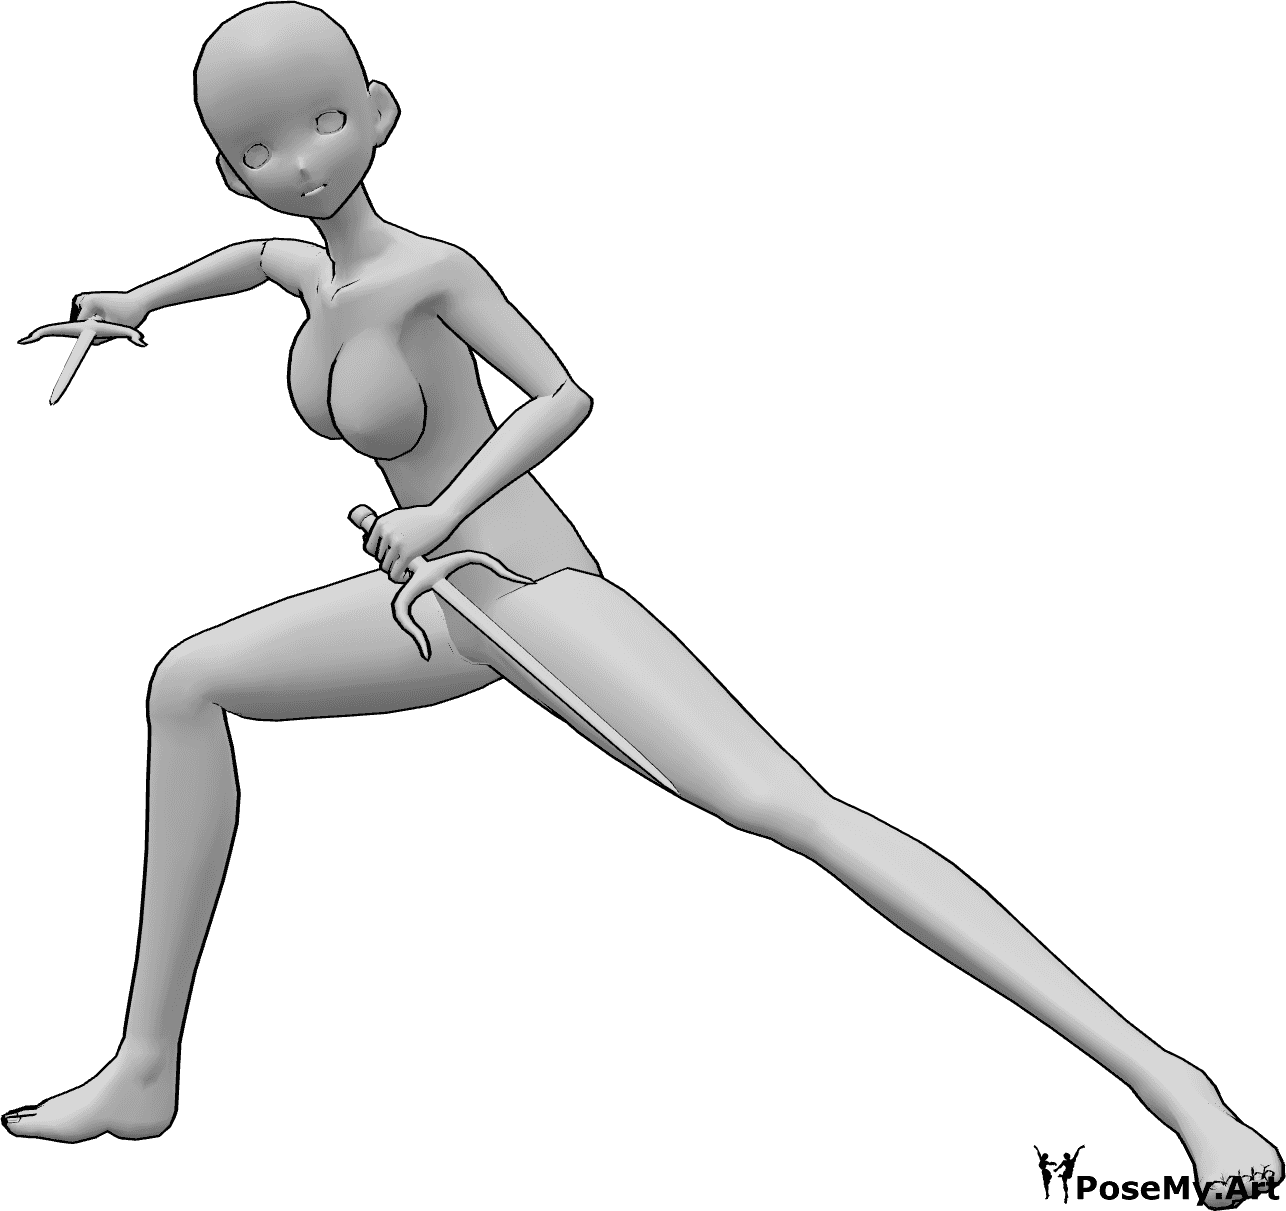 Referencia de poses- Anime con pose de sai - La mujer anime sujeta sais con ambas manos y mira hacia delante, lista para luchar